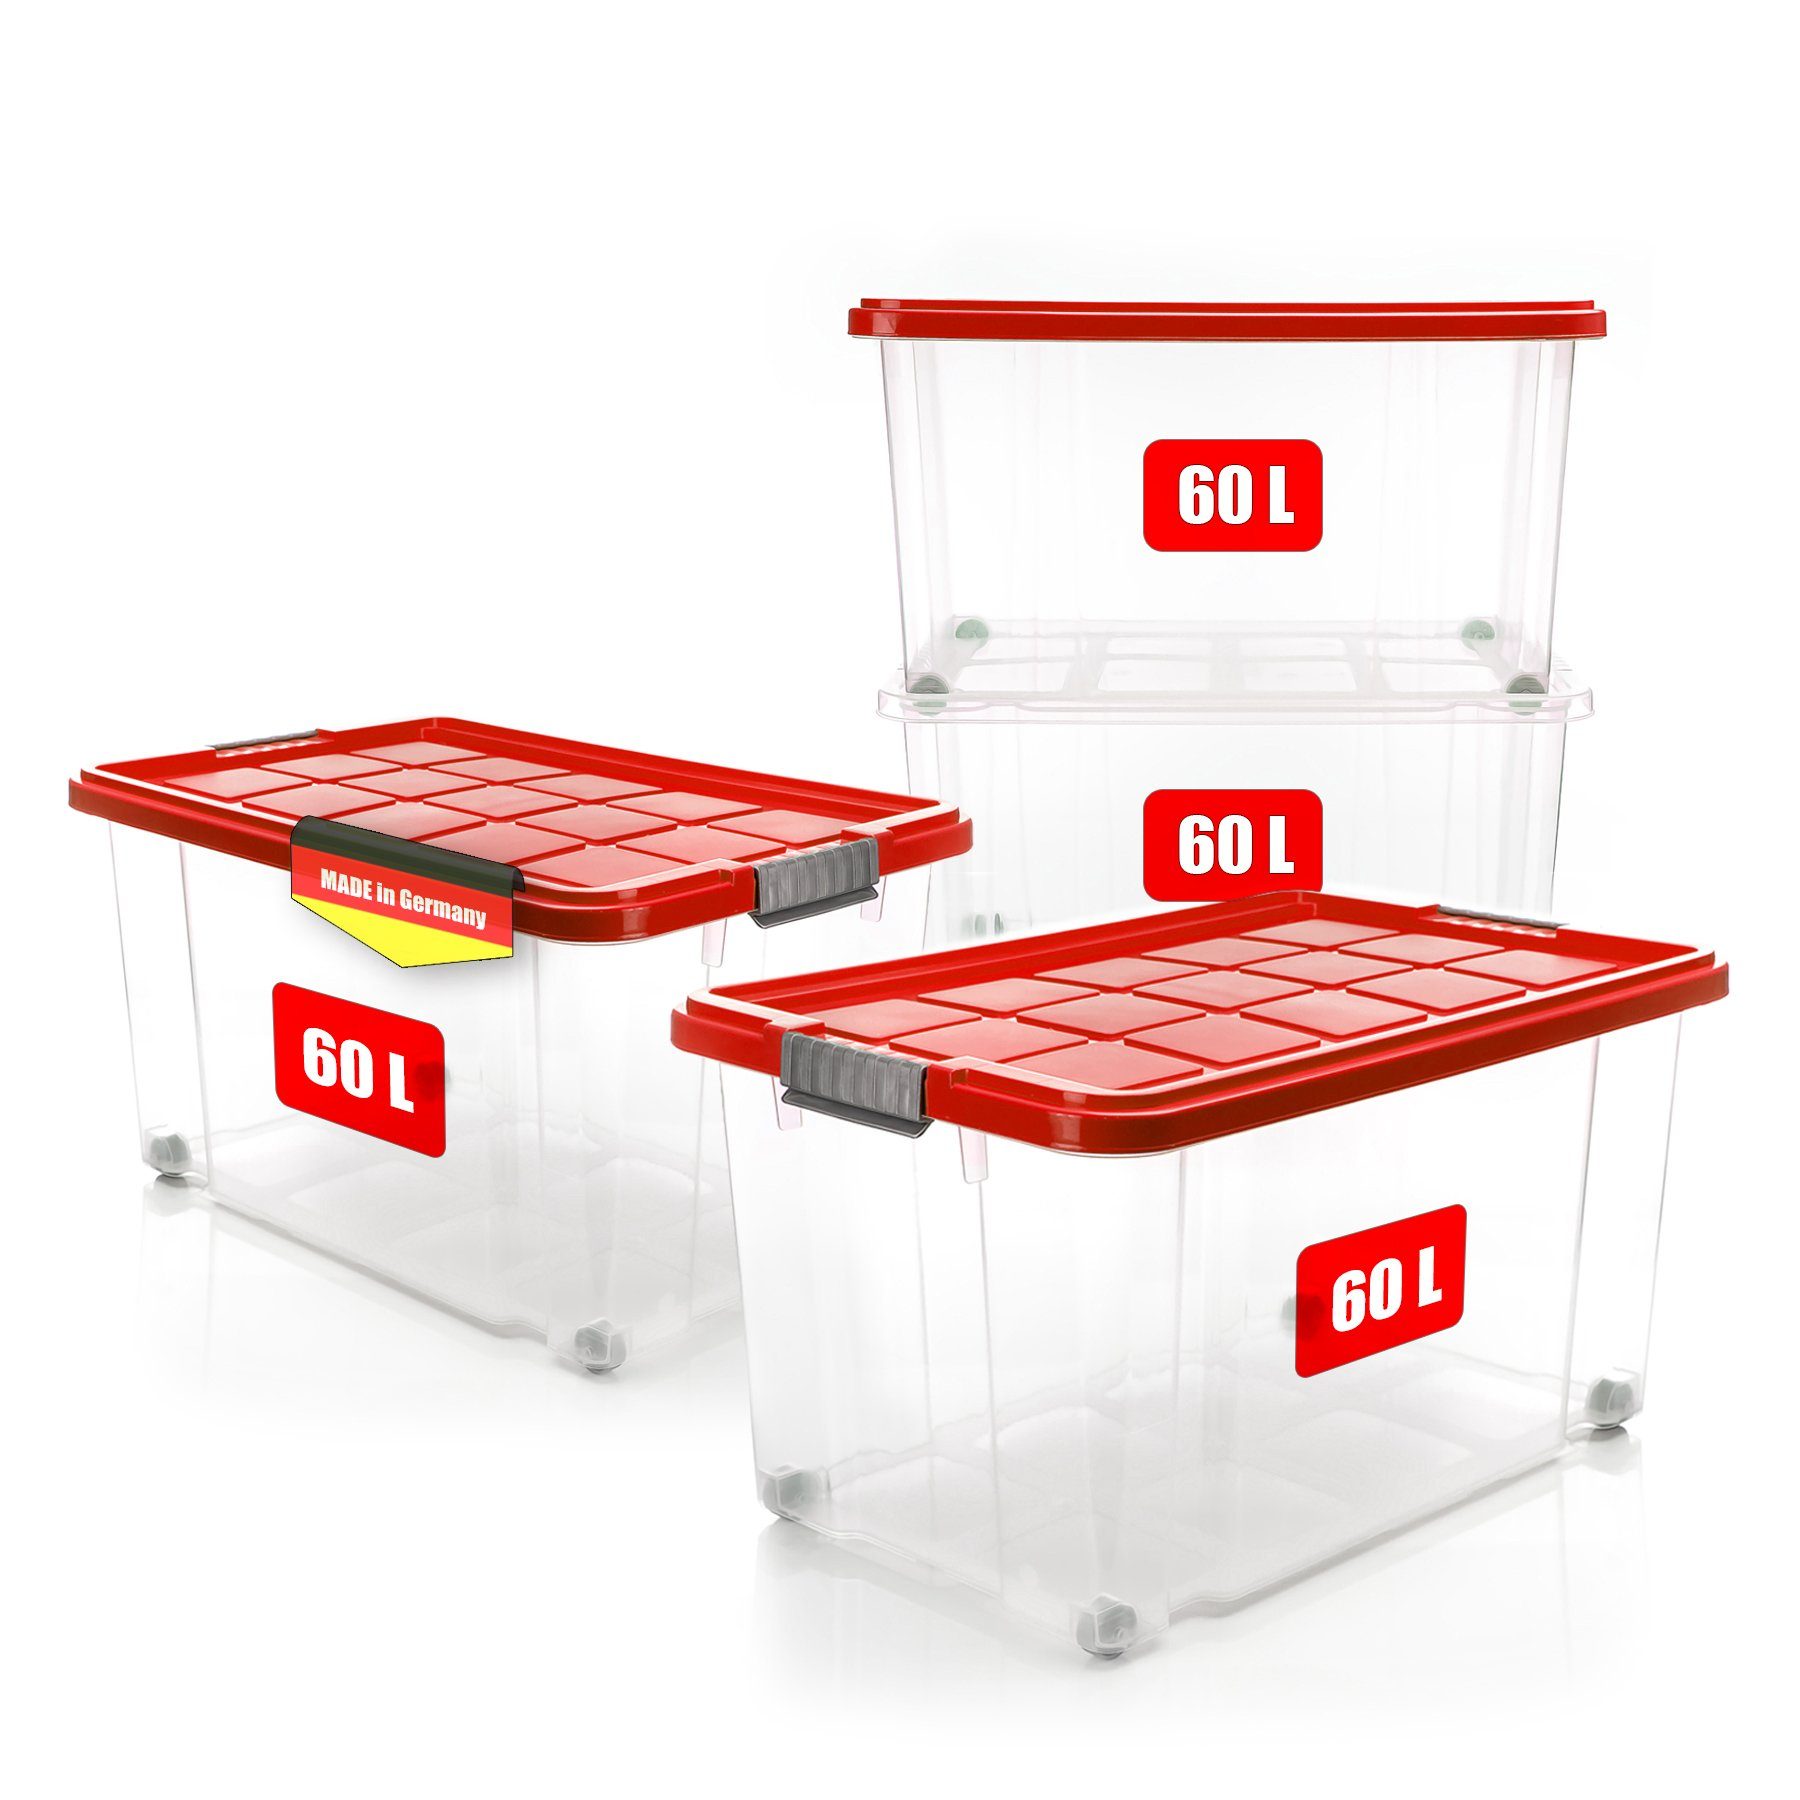 Aufbewahrungsboxen & Stapelboxen online kaufen bei OBI